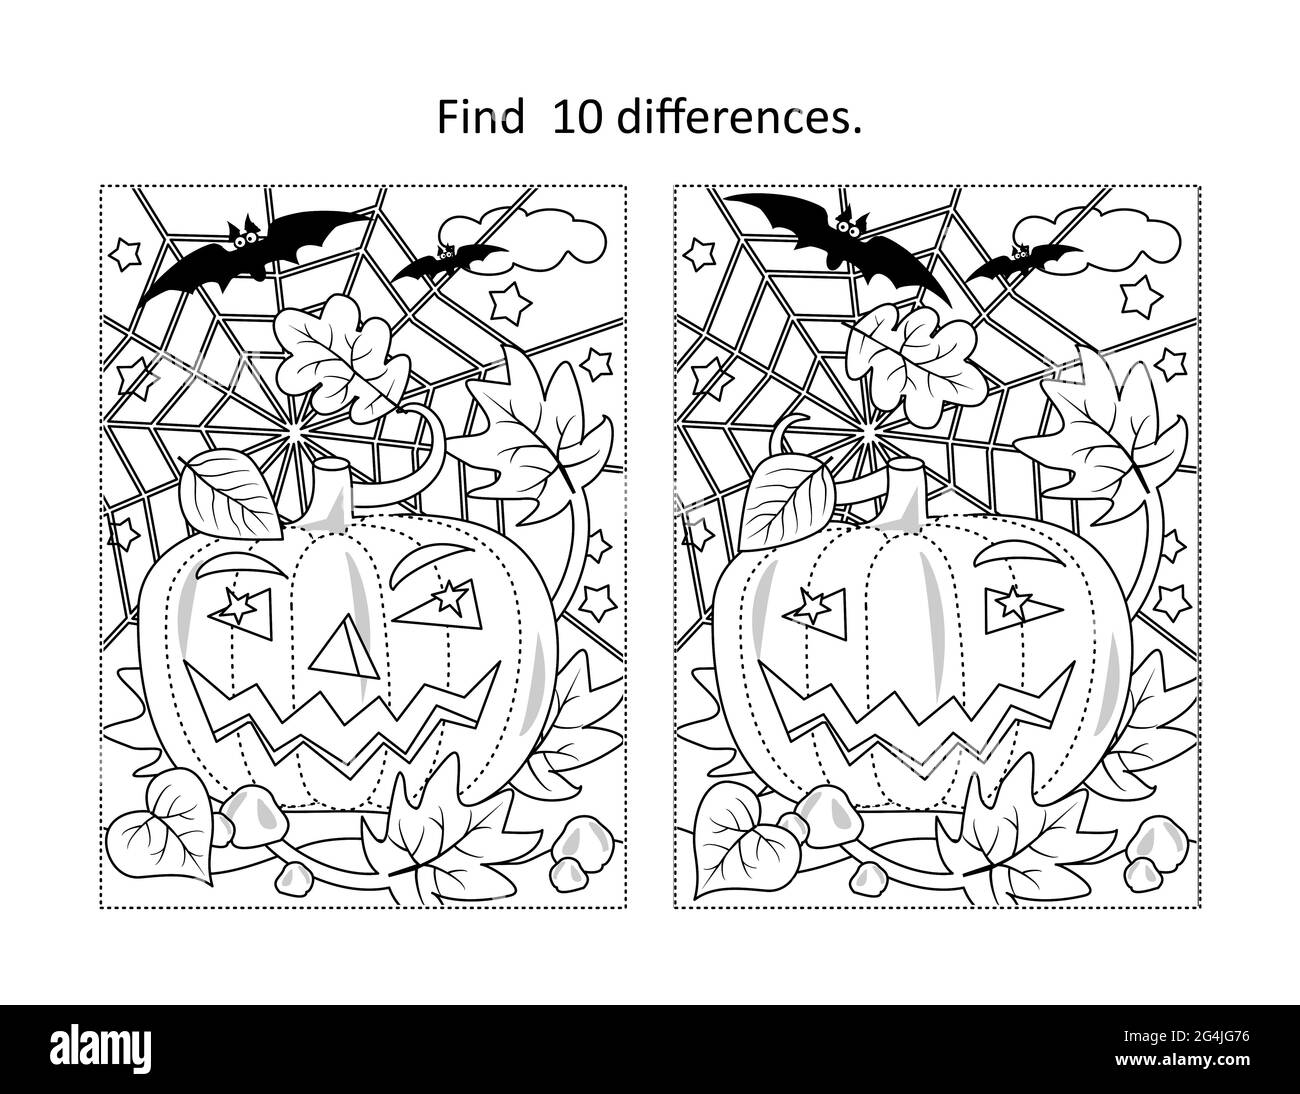 Trova 10 differenze puzzle visivo e pagina da colorare con zucca di Halloween, pipistrelli, spiderweb Foto Stock